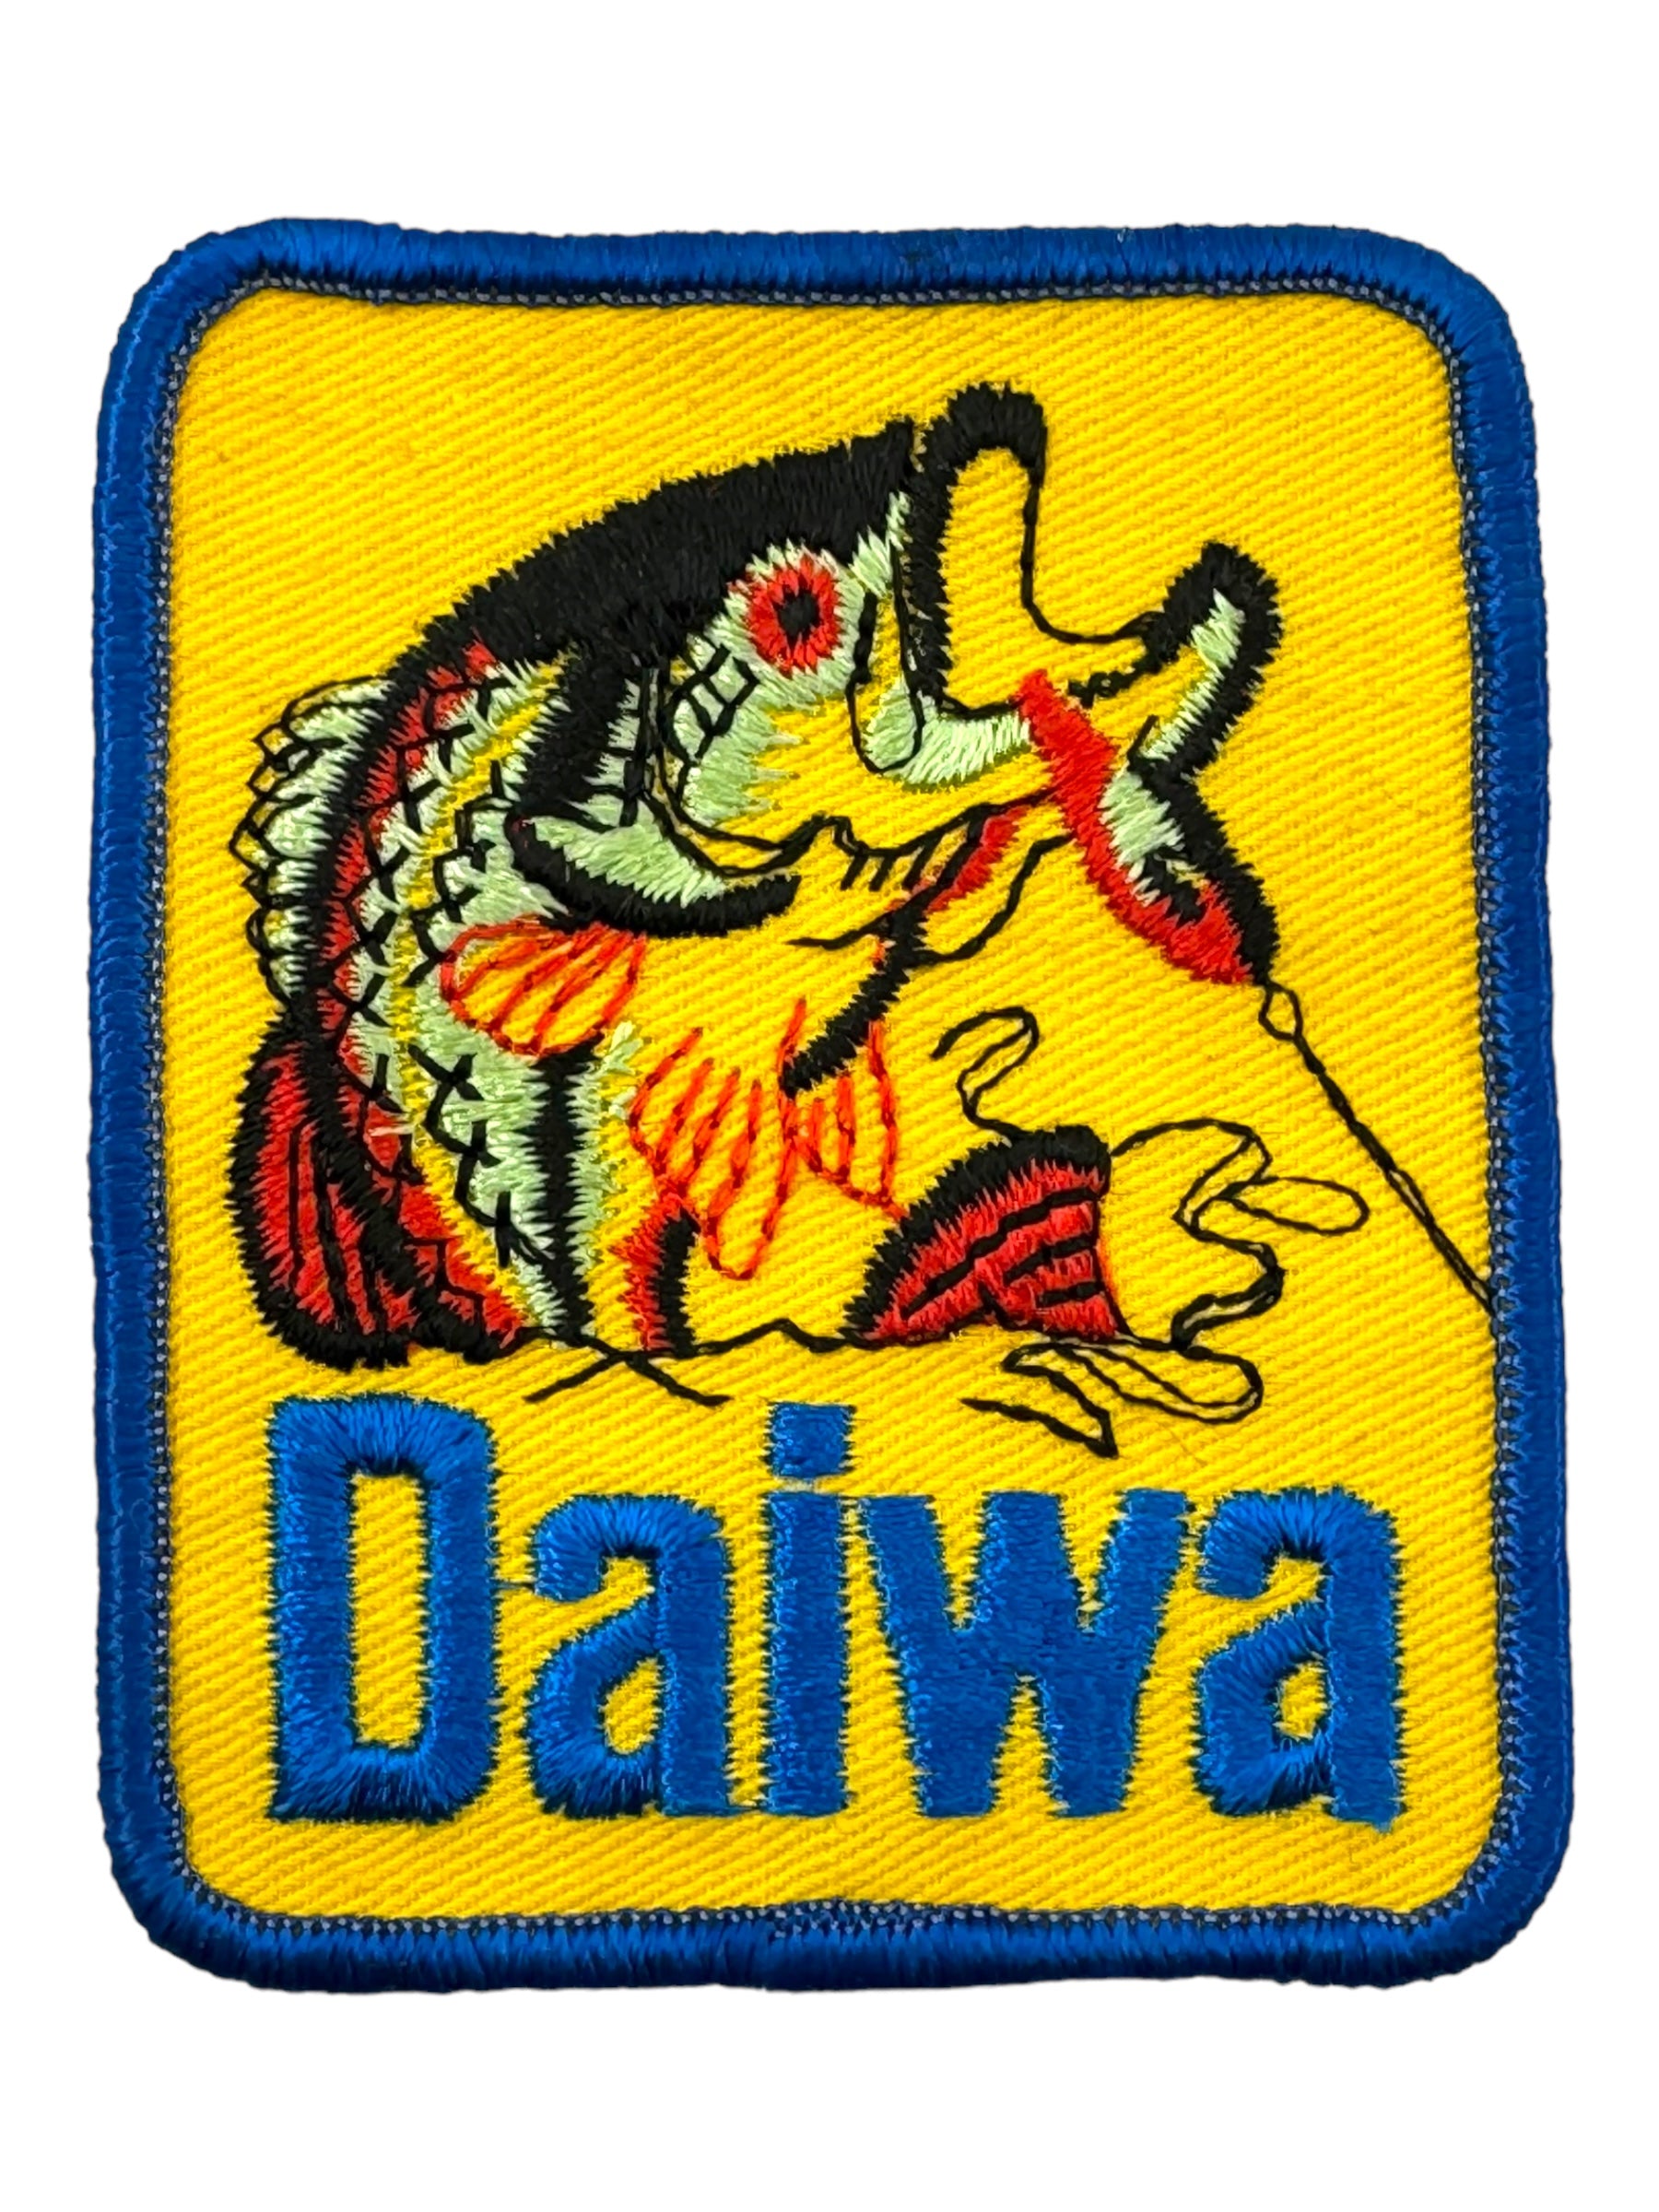 DAIWA USA BASS Fishing Patch • JUMPING LARGEMOUTH BASS – Toad Tackle